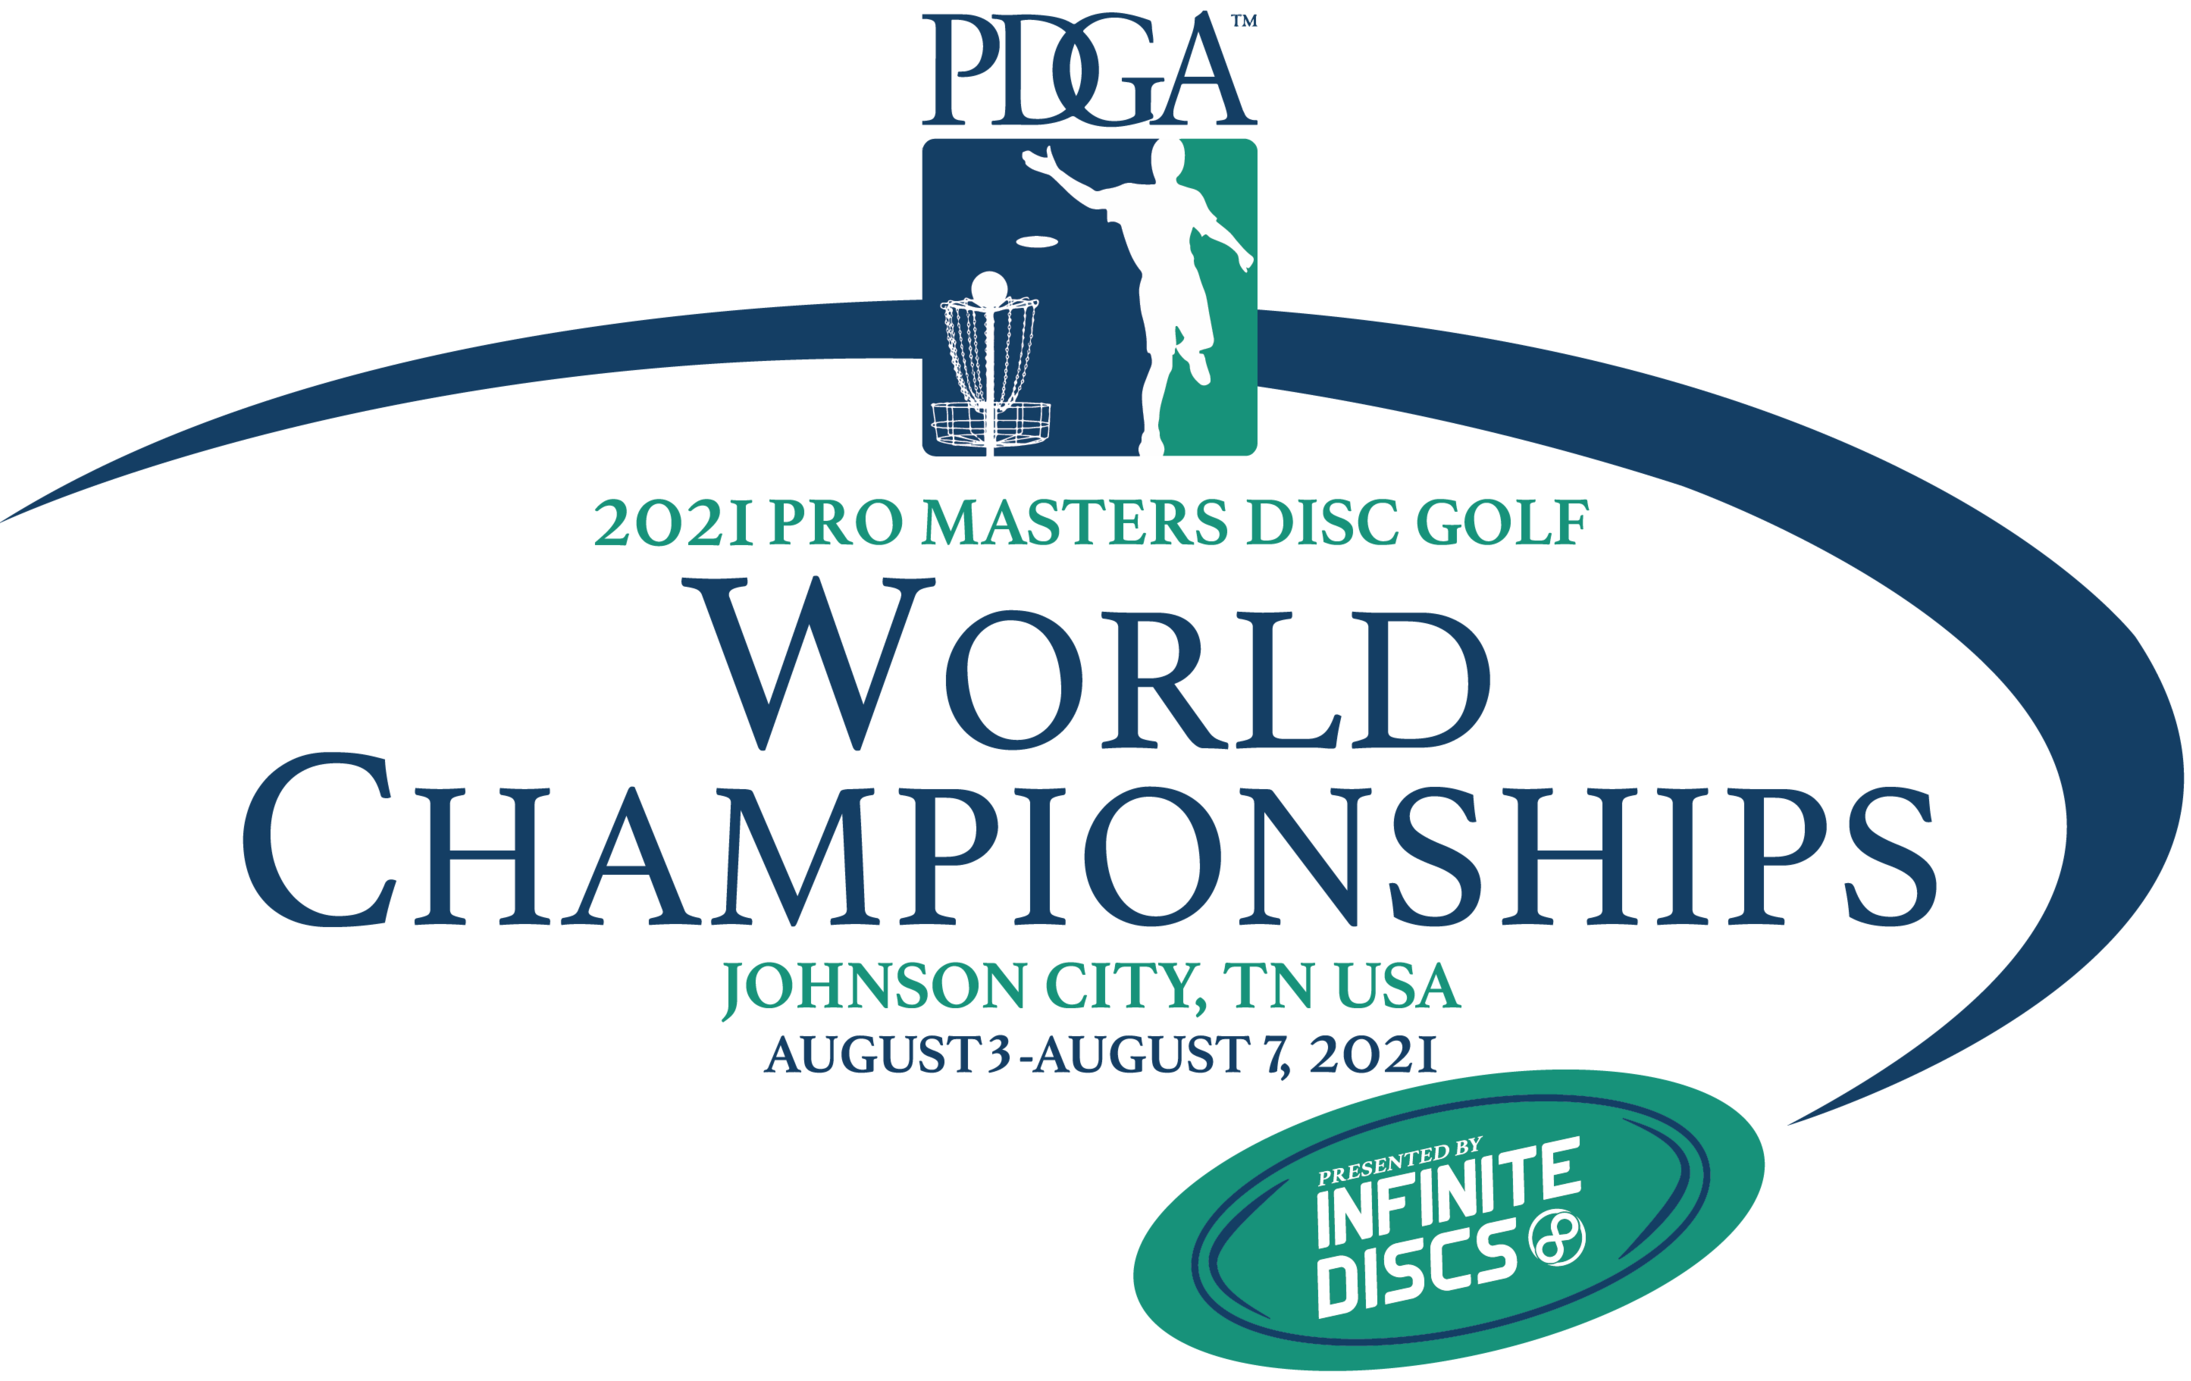 pdga_2021_masters_worlds_logo.png